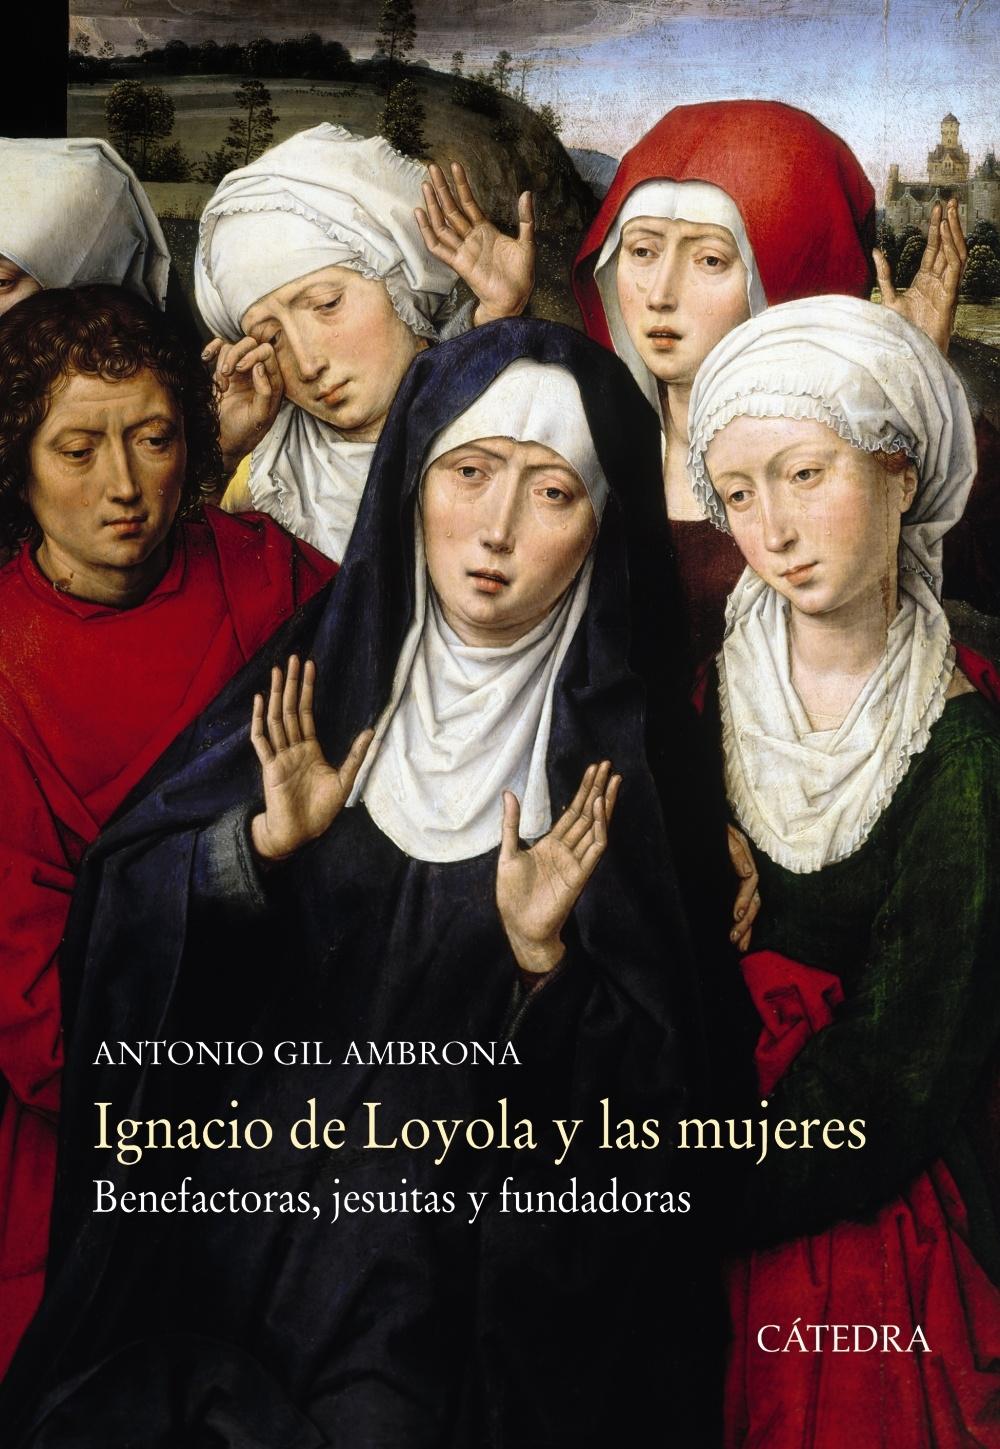 IGNACIO DE LOYOLA Y LAS MUJERES "BENEFACTORAS, JESUITAS Y FUNDADORAS". 